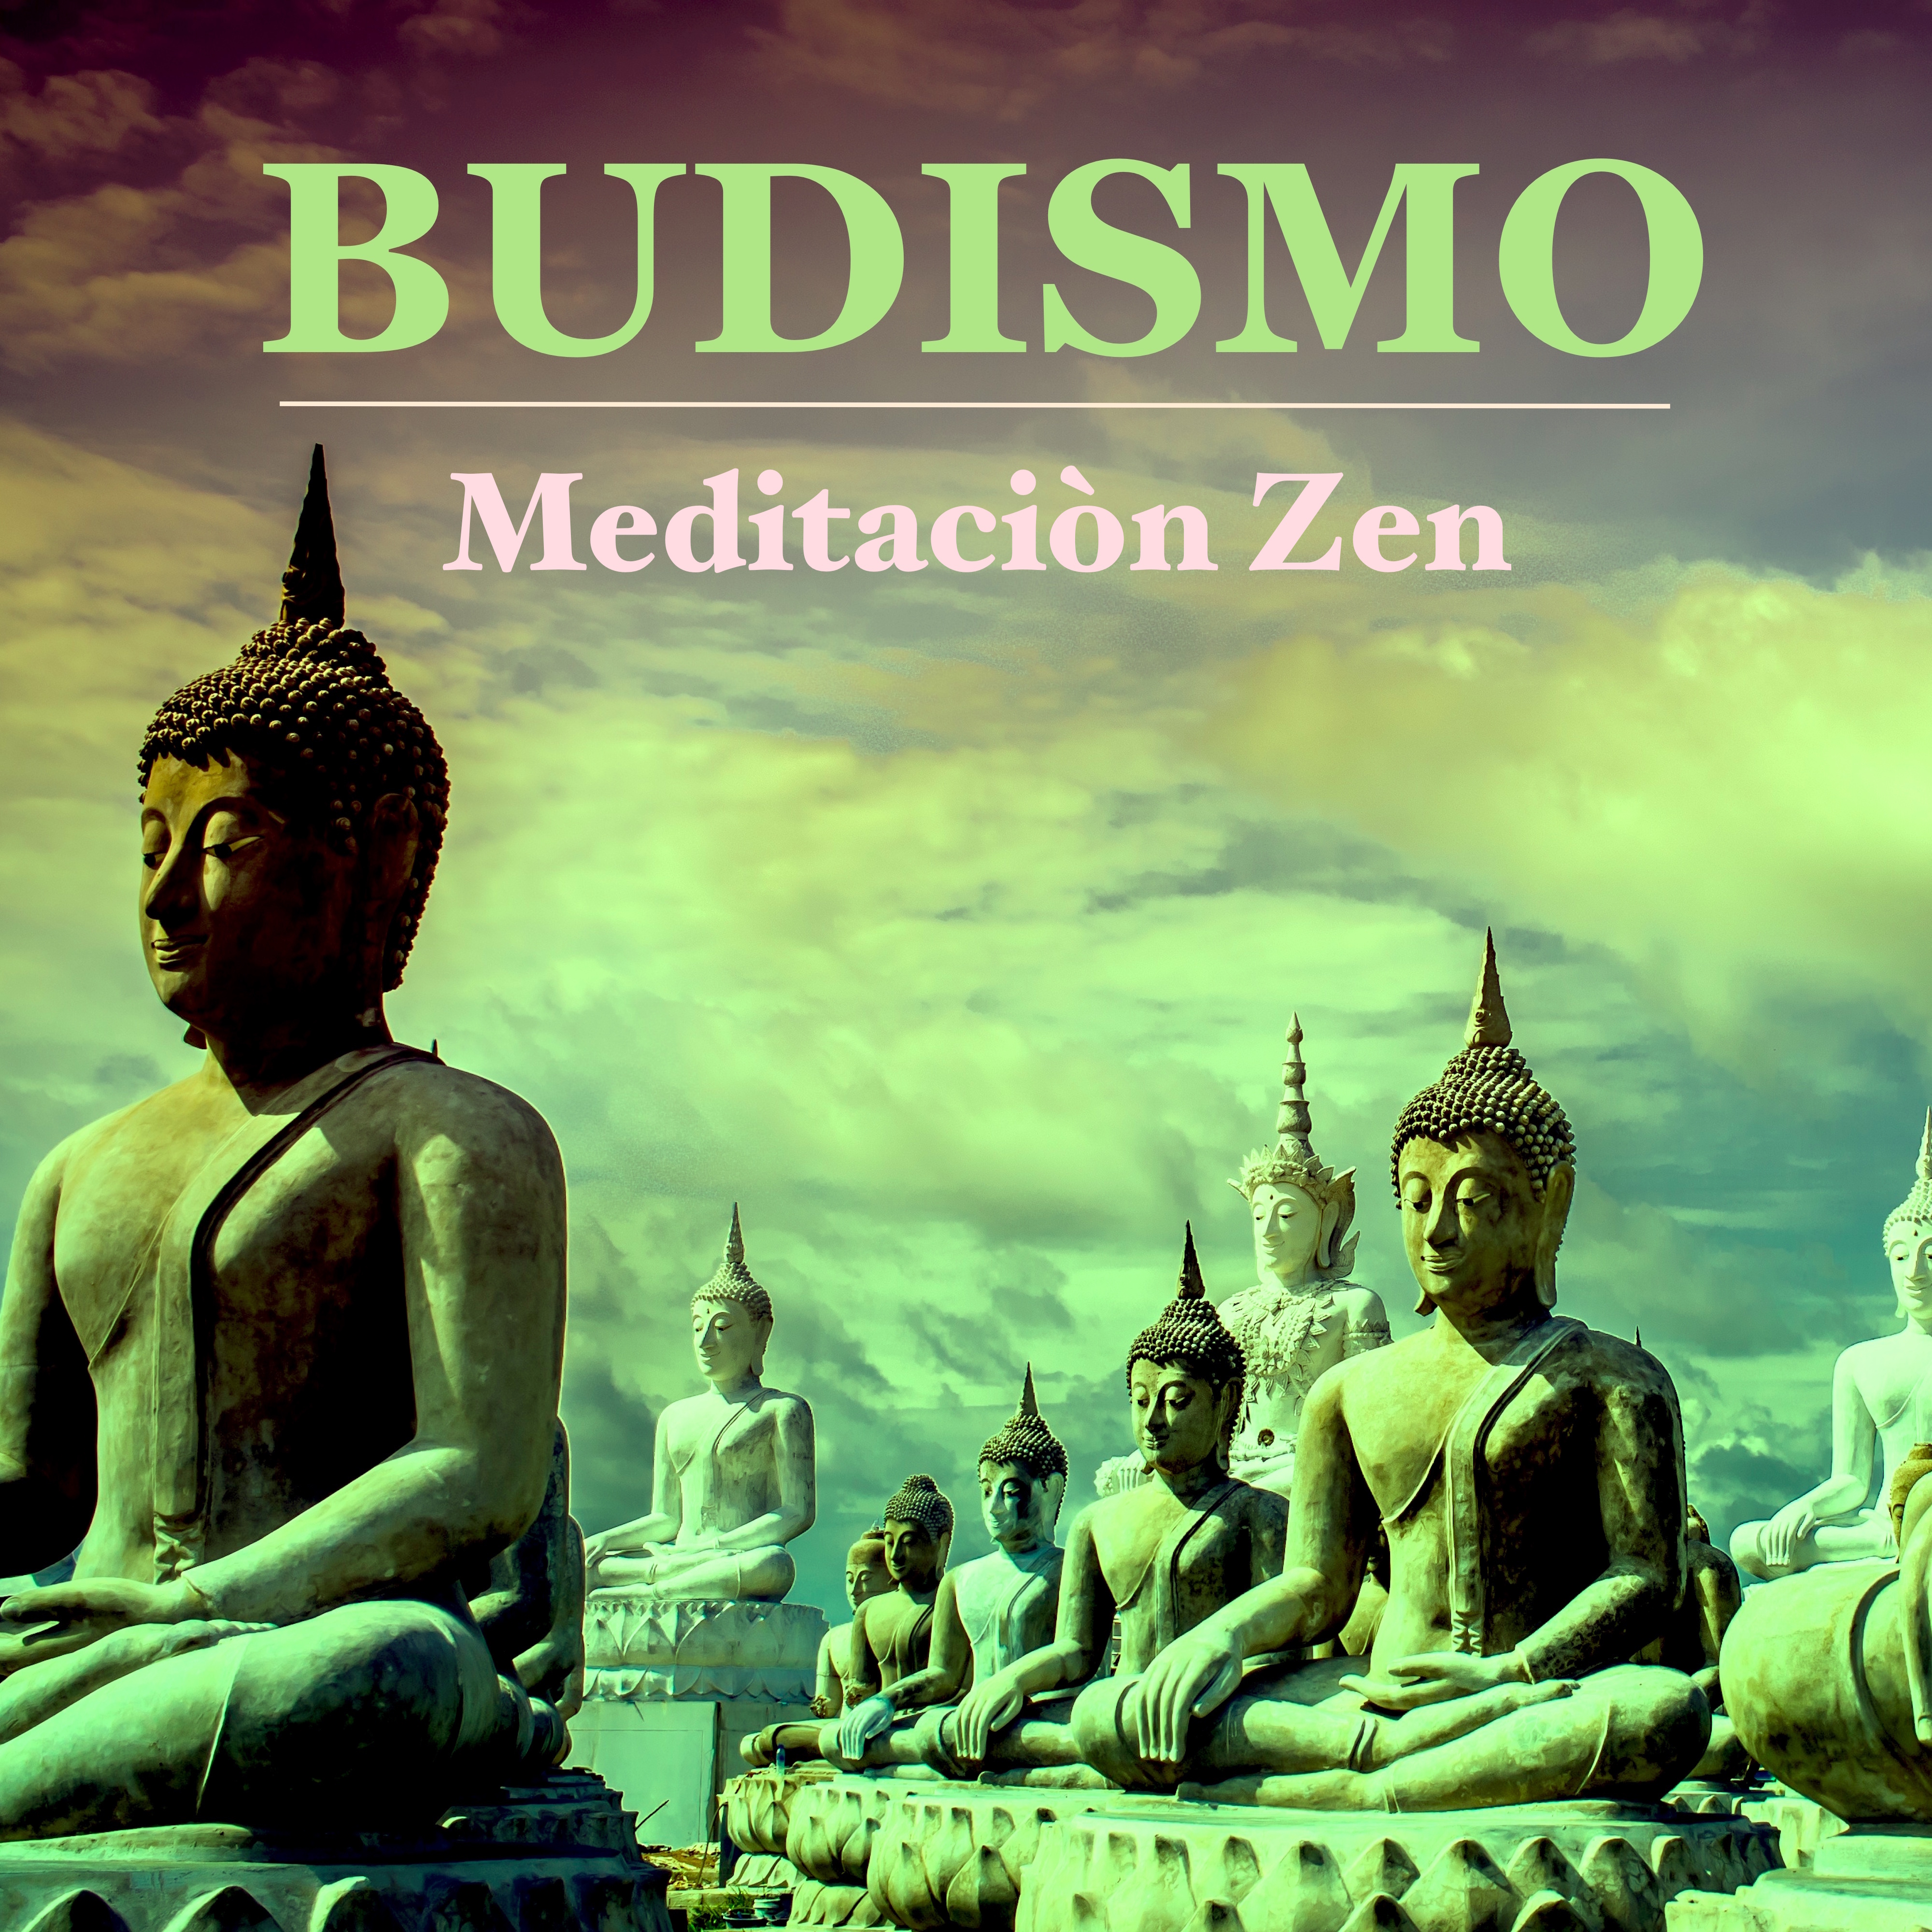 Budismo – Música Budista para Meditaciòn Zen Trascendental – Sanar el Alma y Relajar la Mente